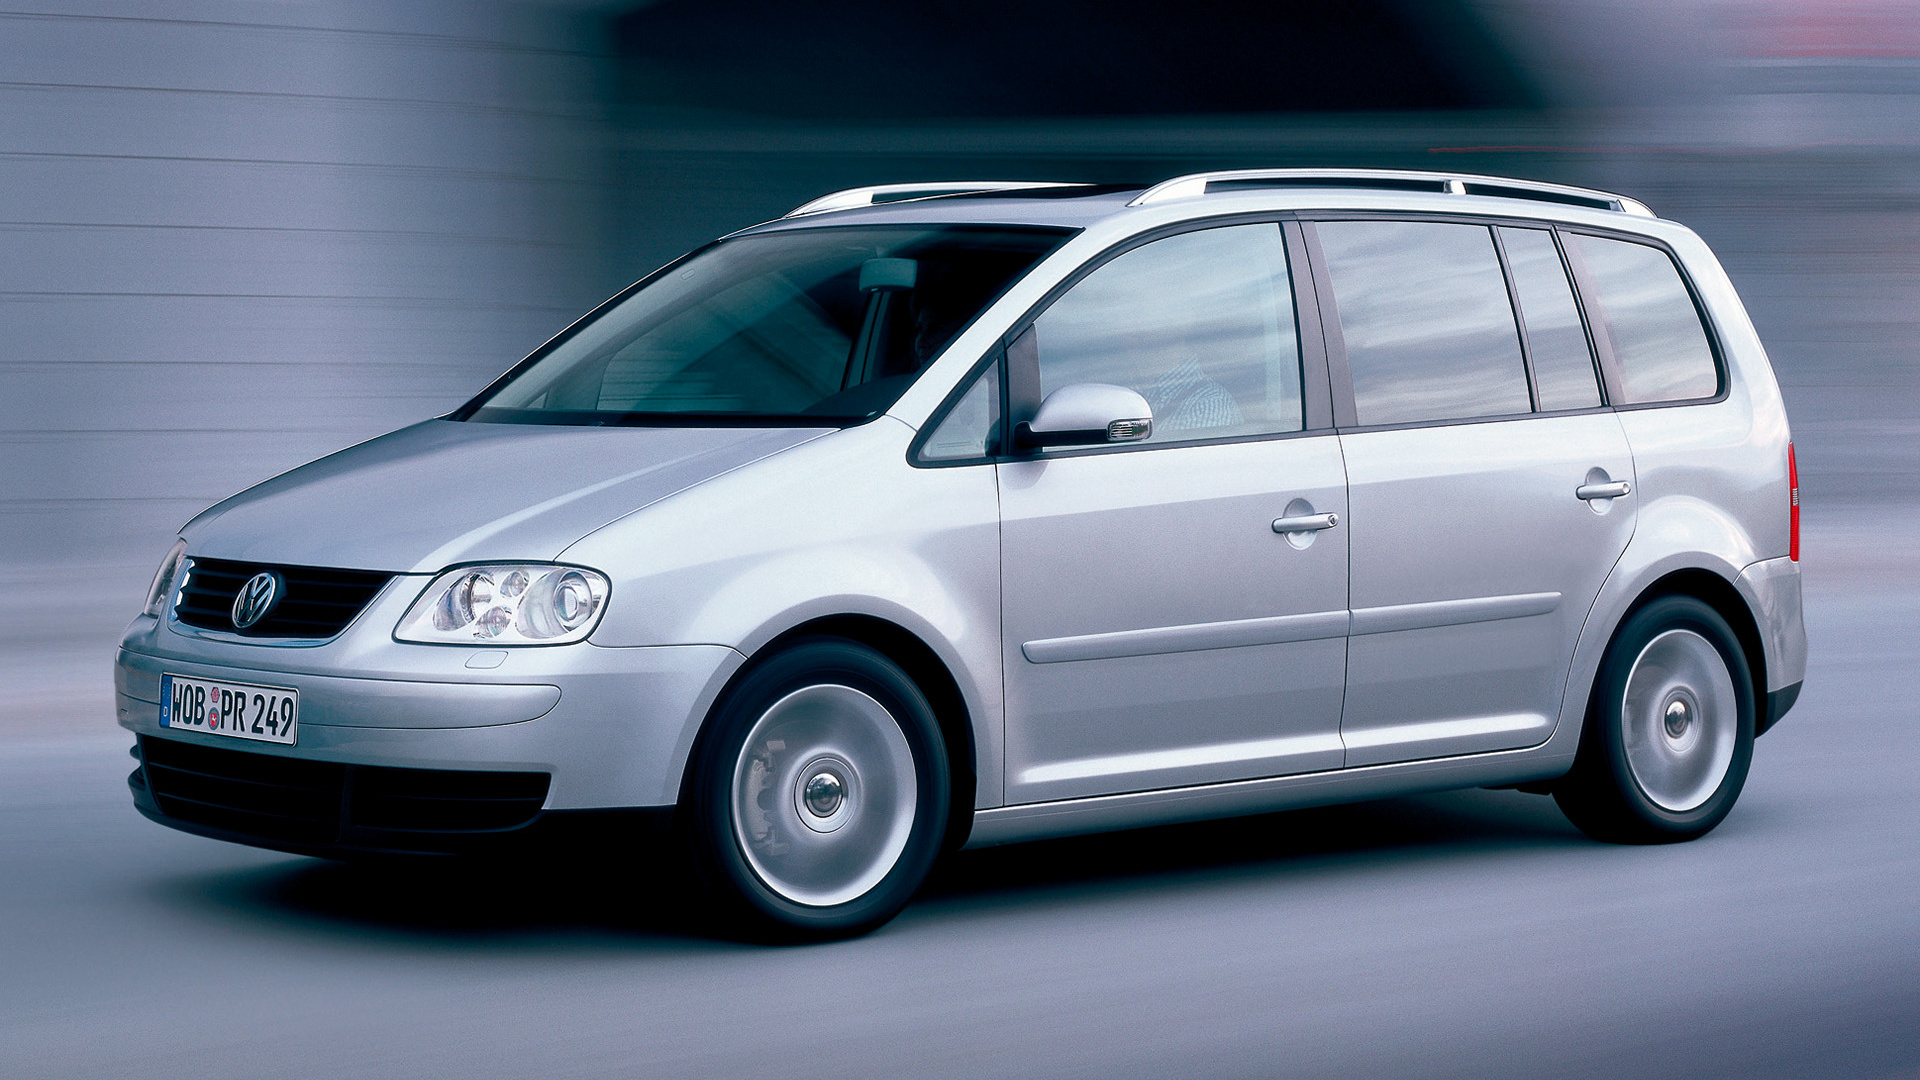 Bakken Vooruitgang Oriëntatiepunt 2003 Volkswagen Touran - Wallpapers and HD Images | Car Pixel